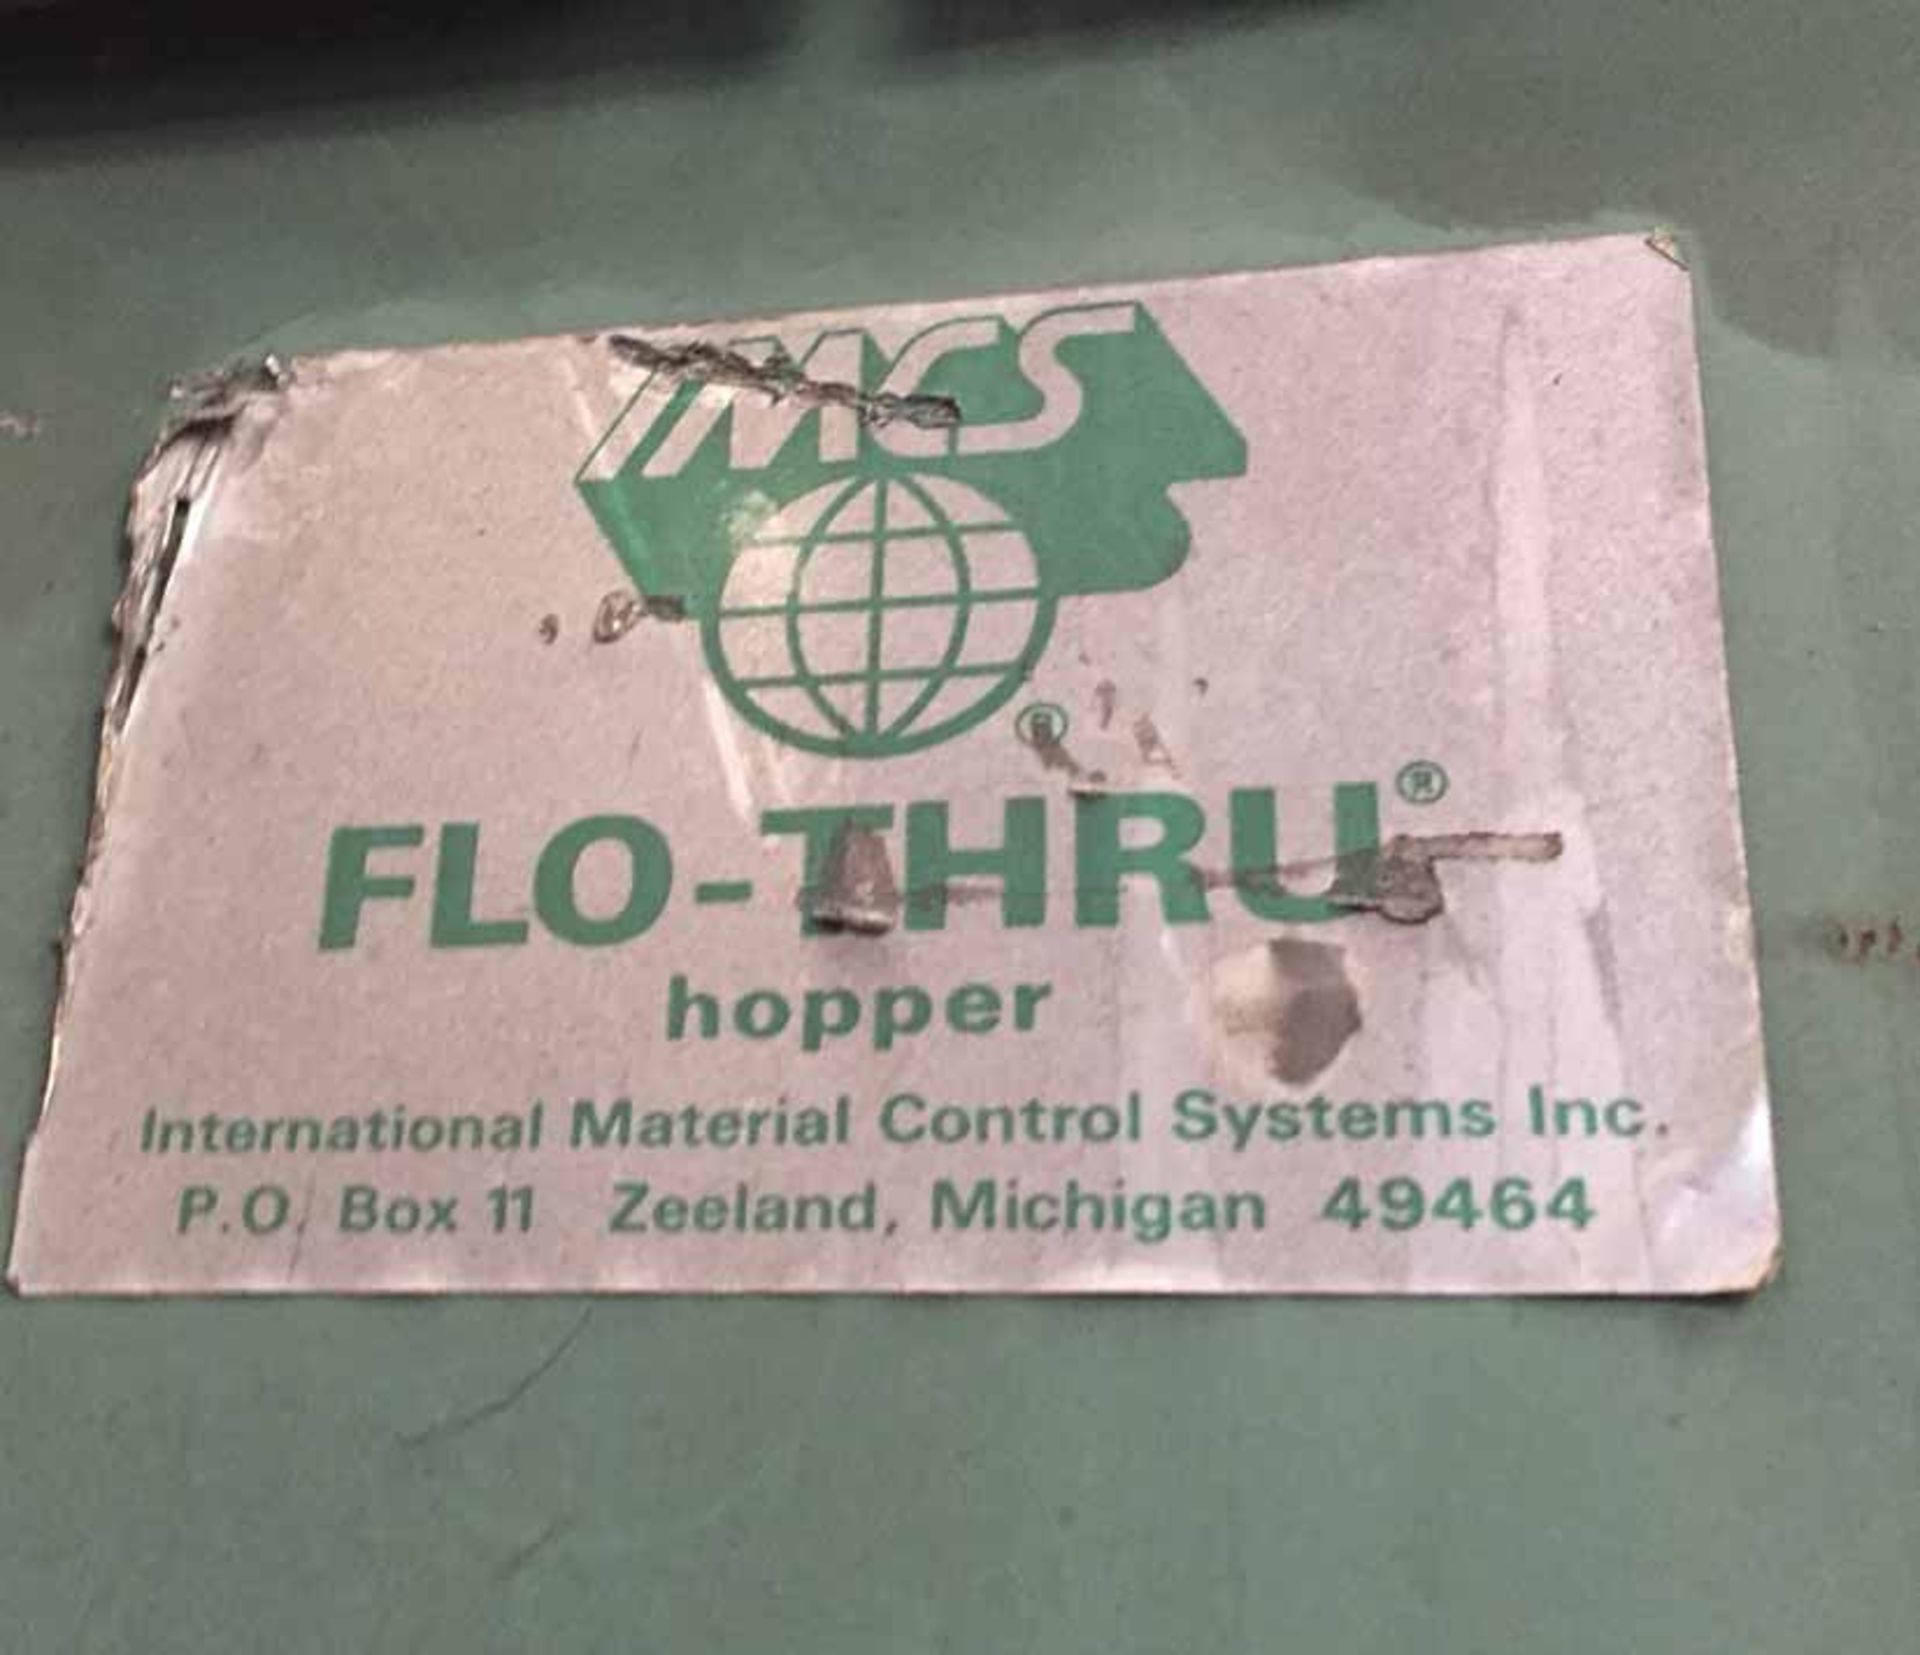 Flo-Thru sand hopper, 44 x 44 x 84 - Image 3 of 3